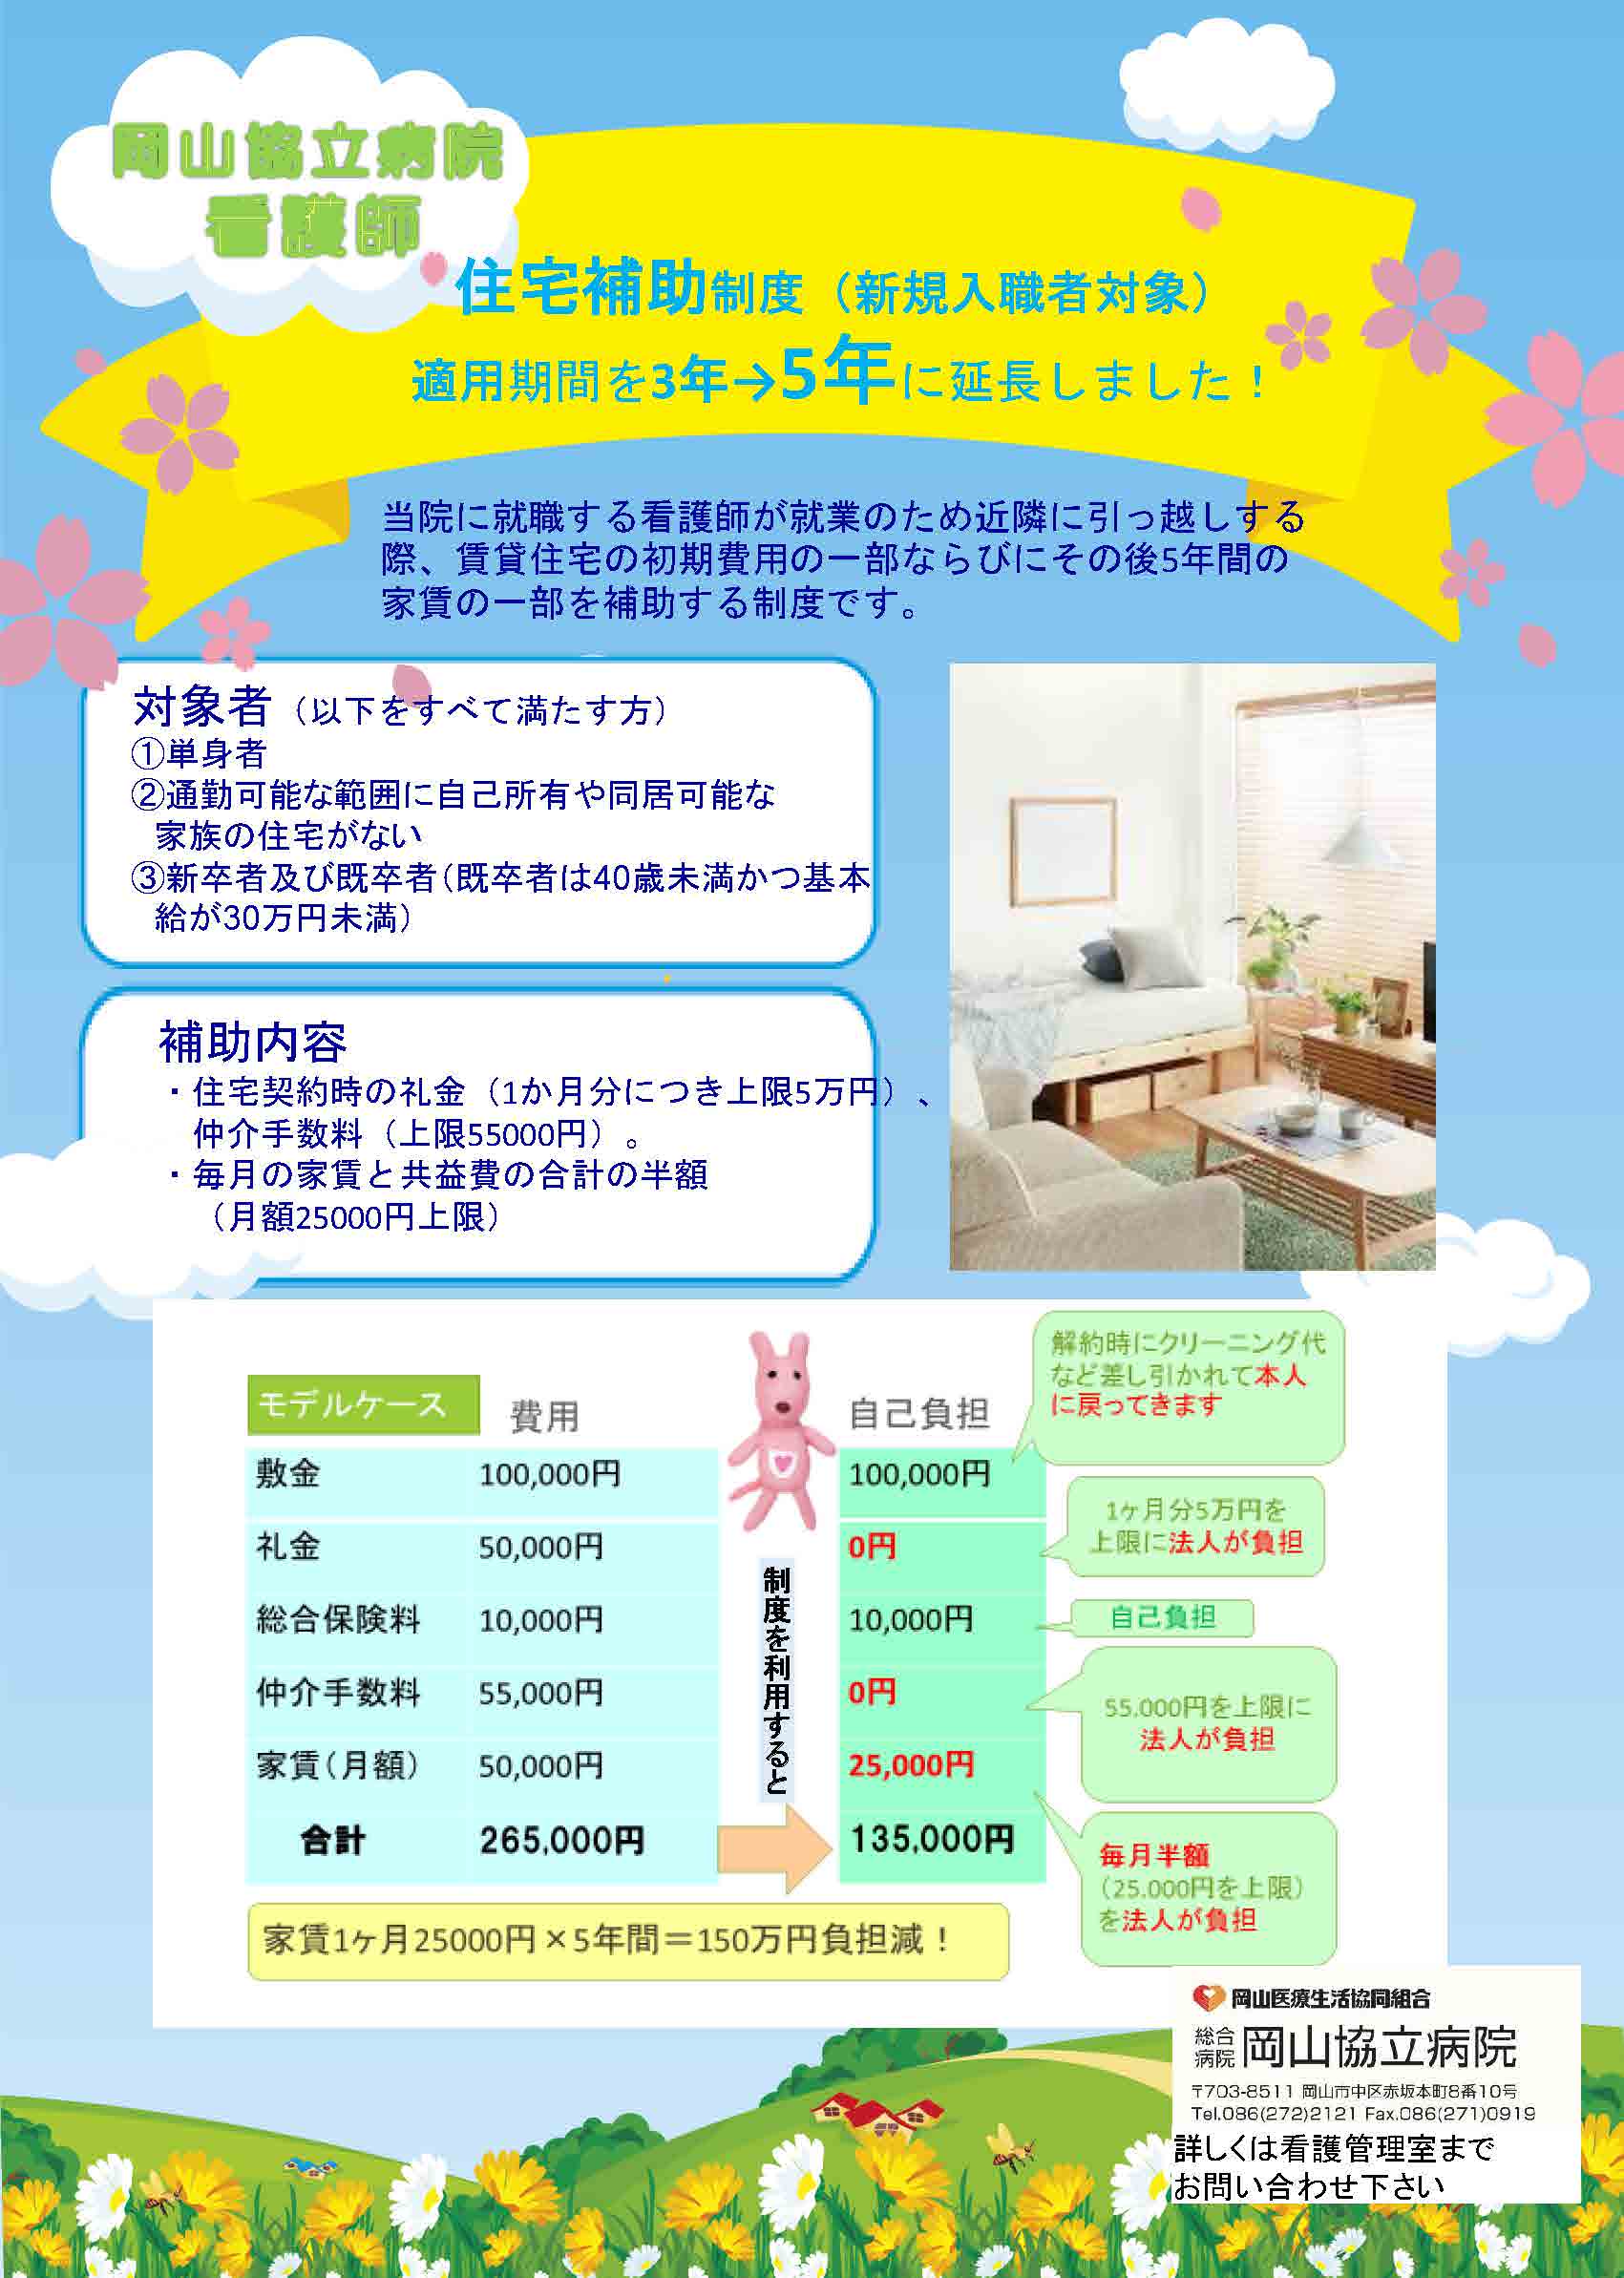 【岡山協立病院看護部】住宅補助制度適用期間延長について